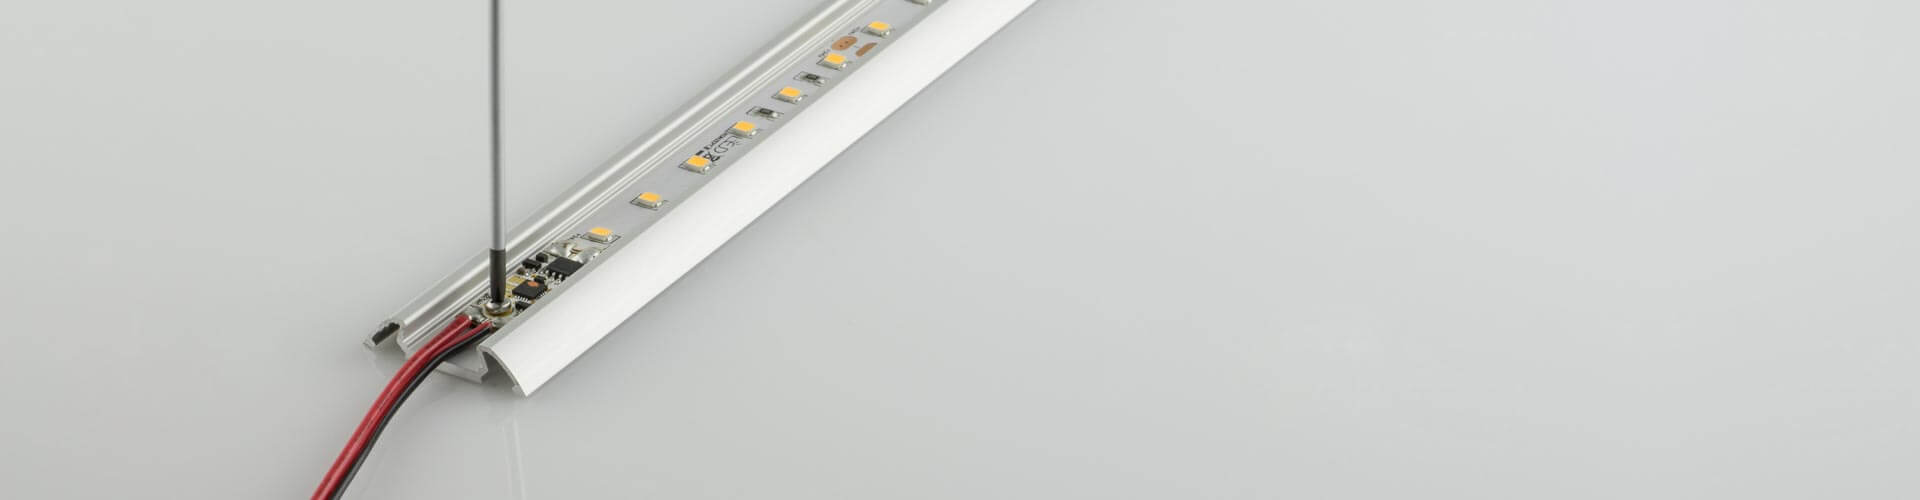 LED Streifen mit Dimmer Bild 2